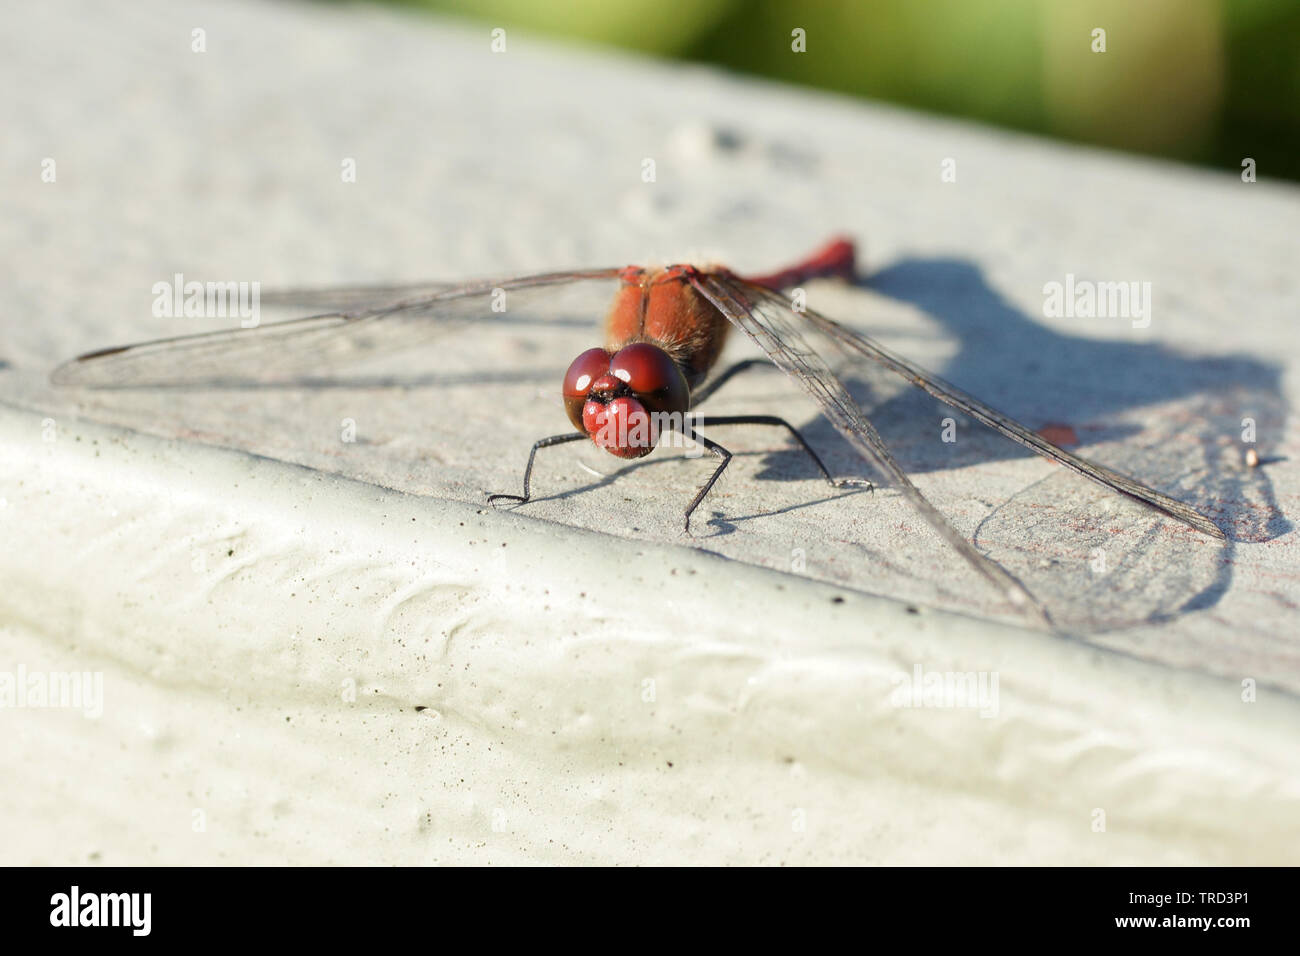 Blutrote Heidelibelle (männlich) / Dragonfly / ruddy darter Stock Photo